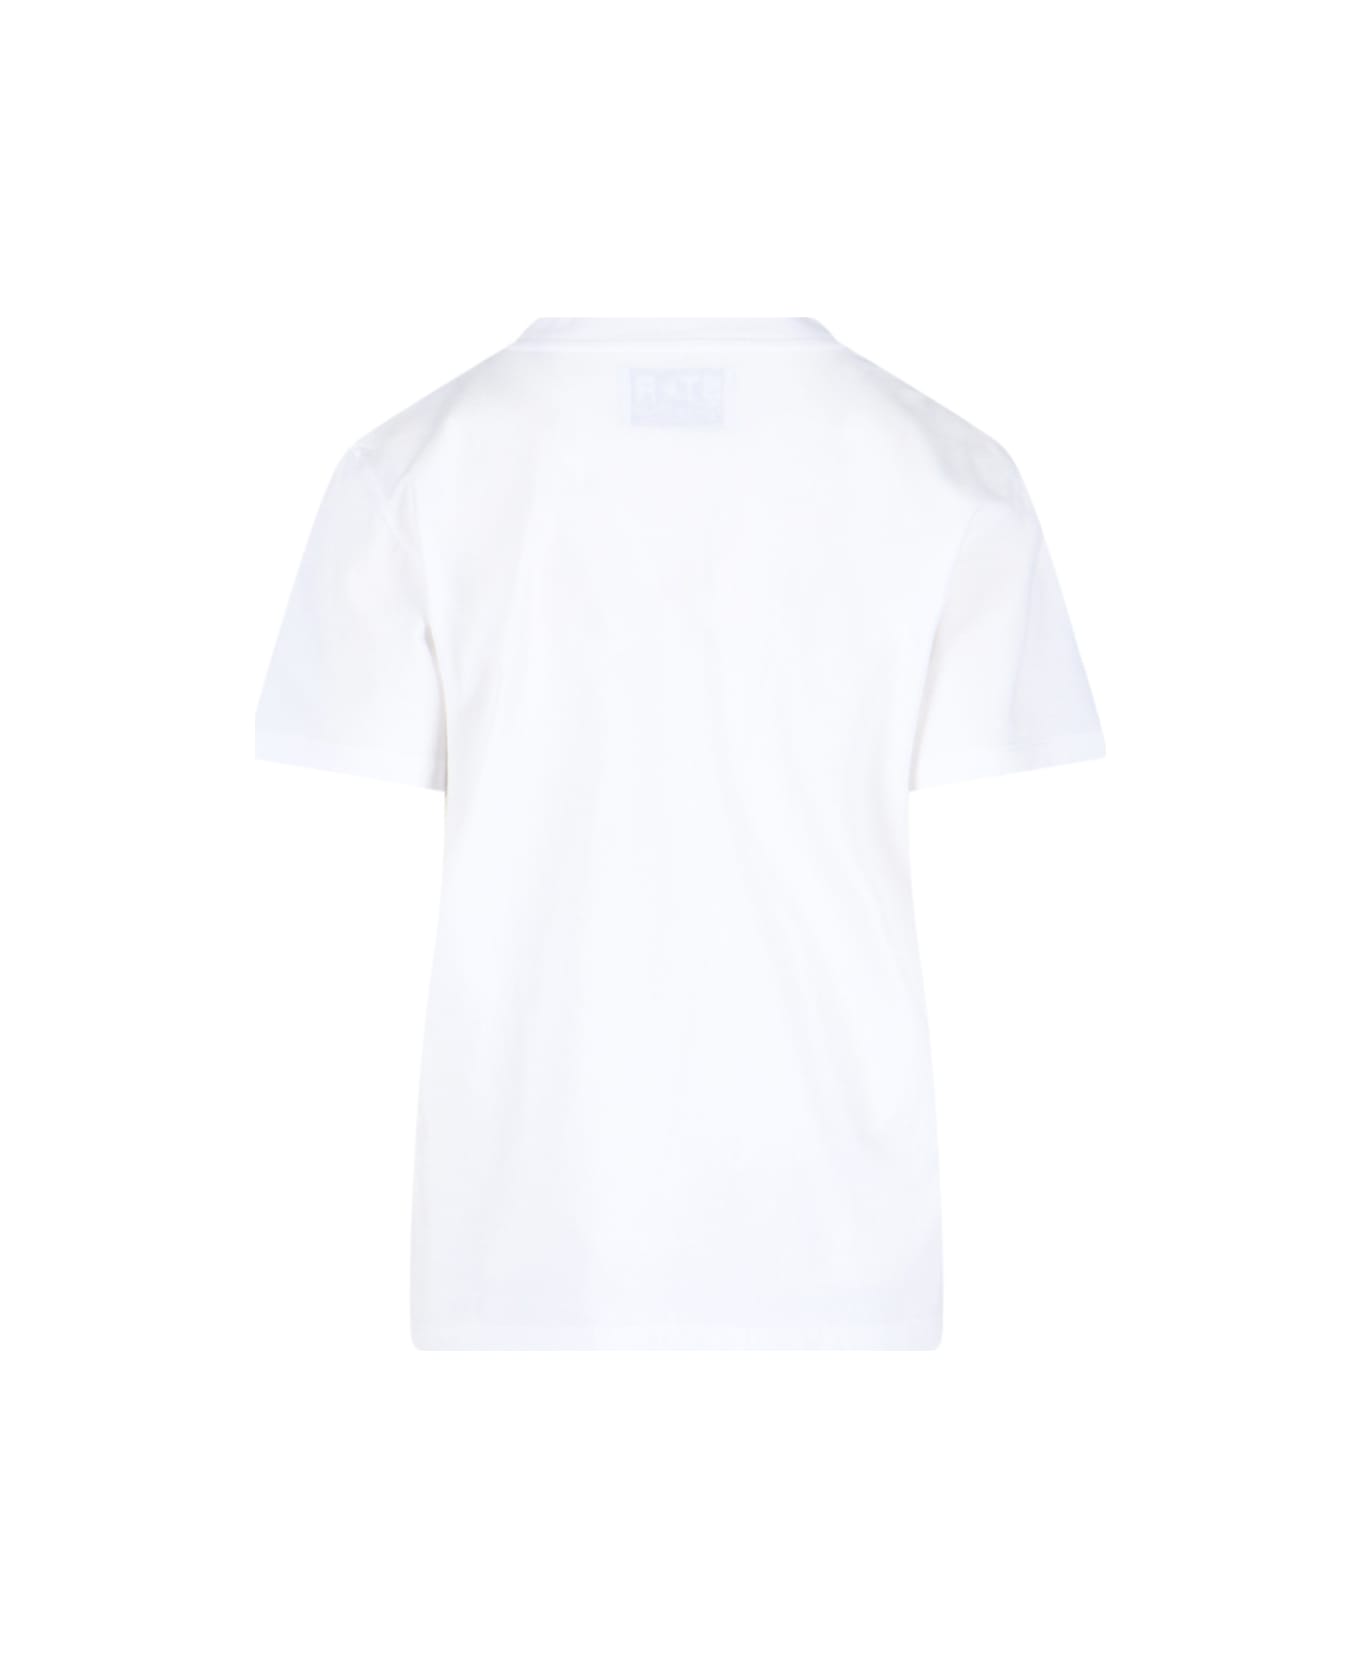 Golden Goose Logo T-shirt - White